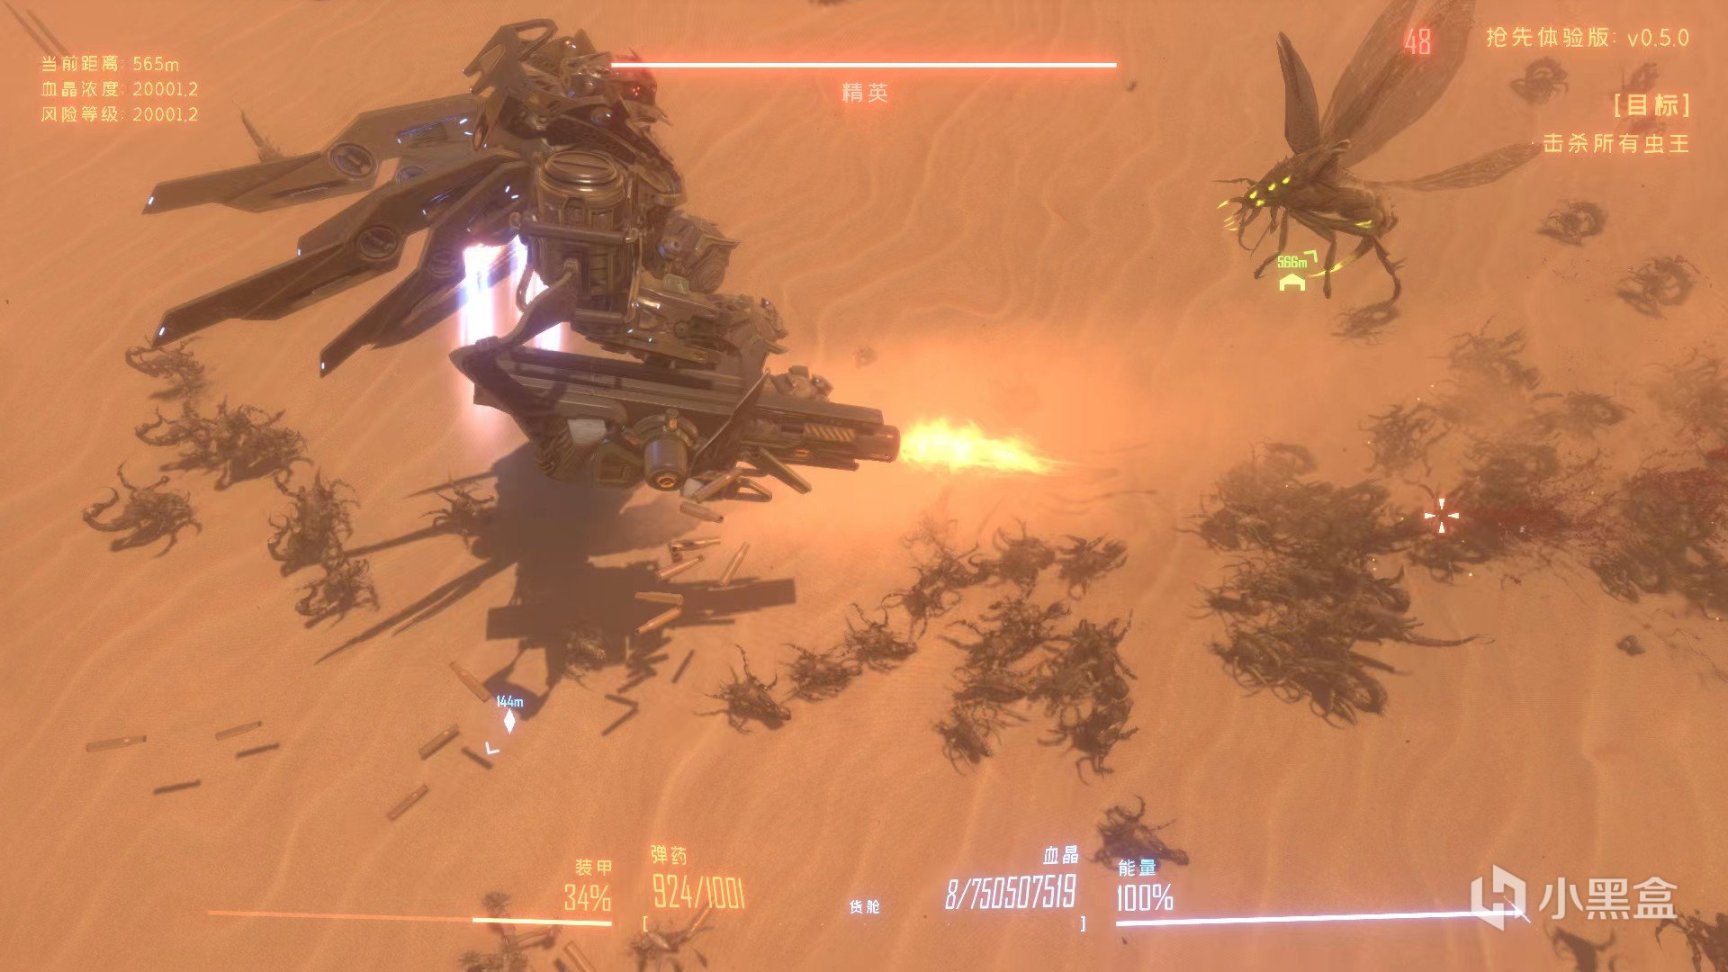 【PC遊戲】國產遊戲《蟲潮》來襲，變身機甲戰士血戰異星蟲群-第1張